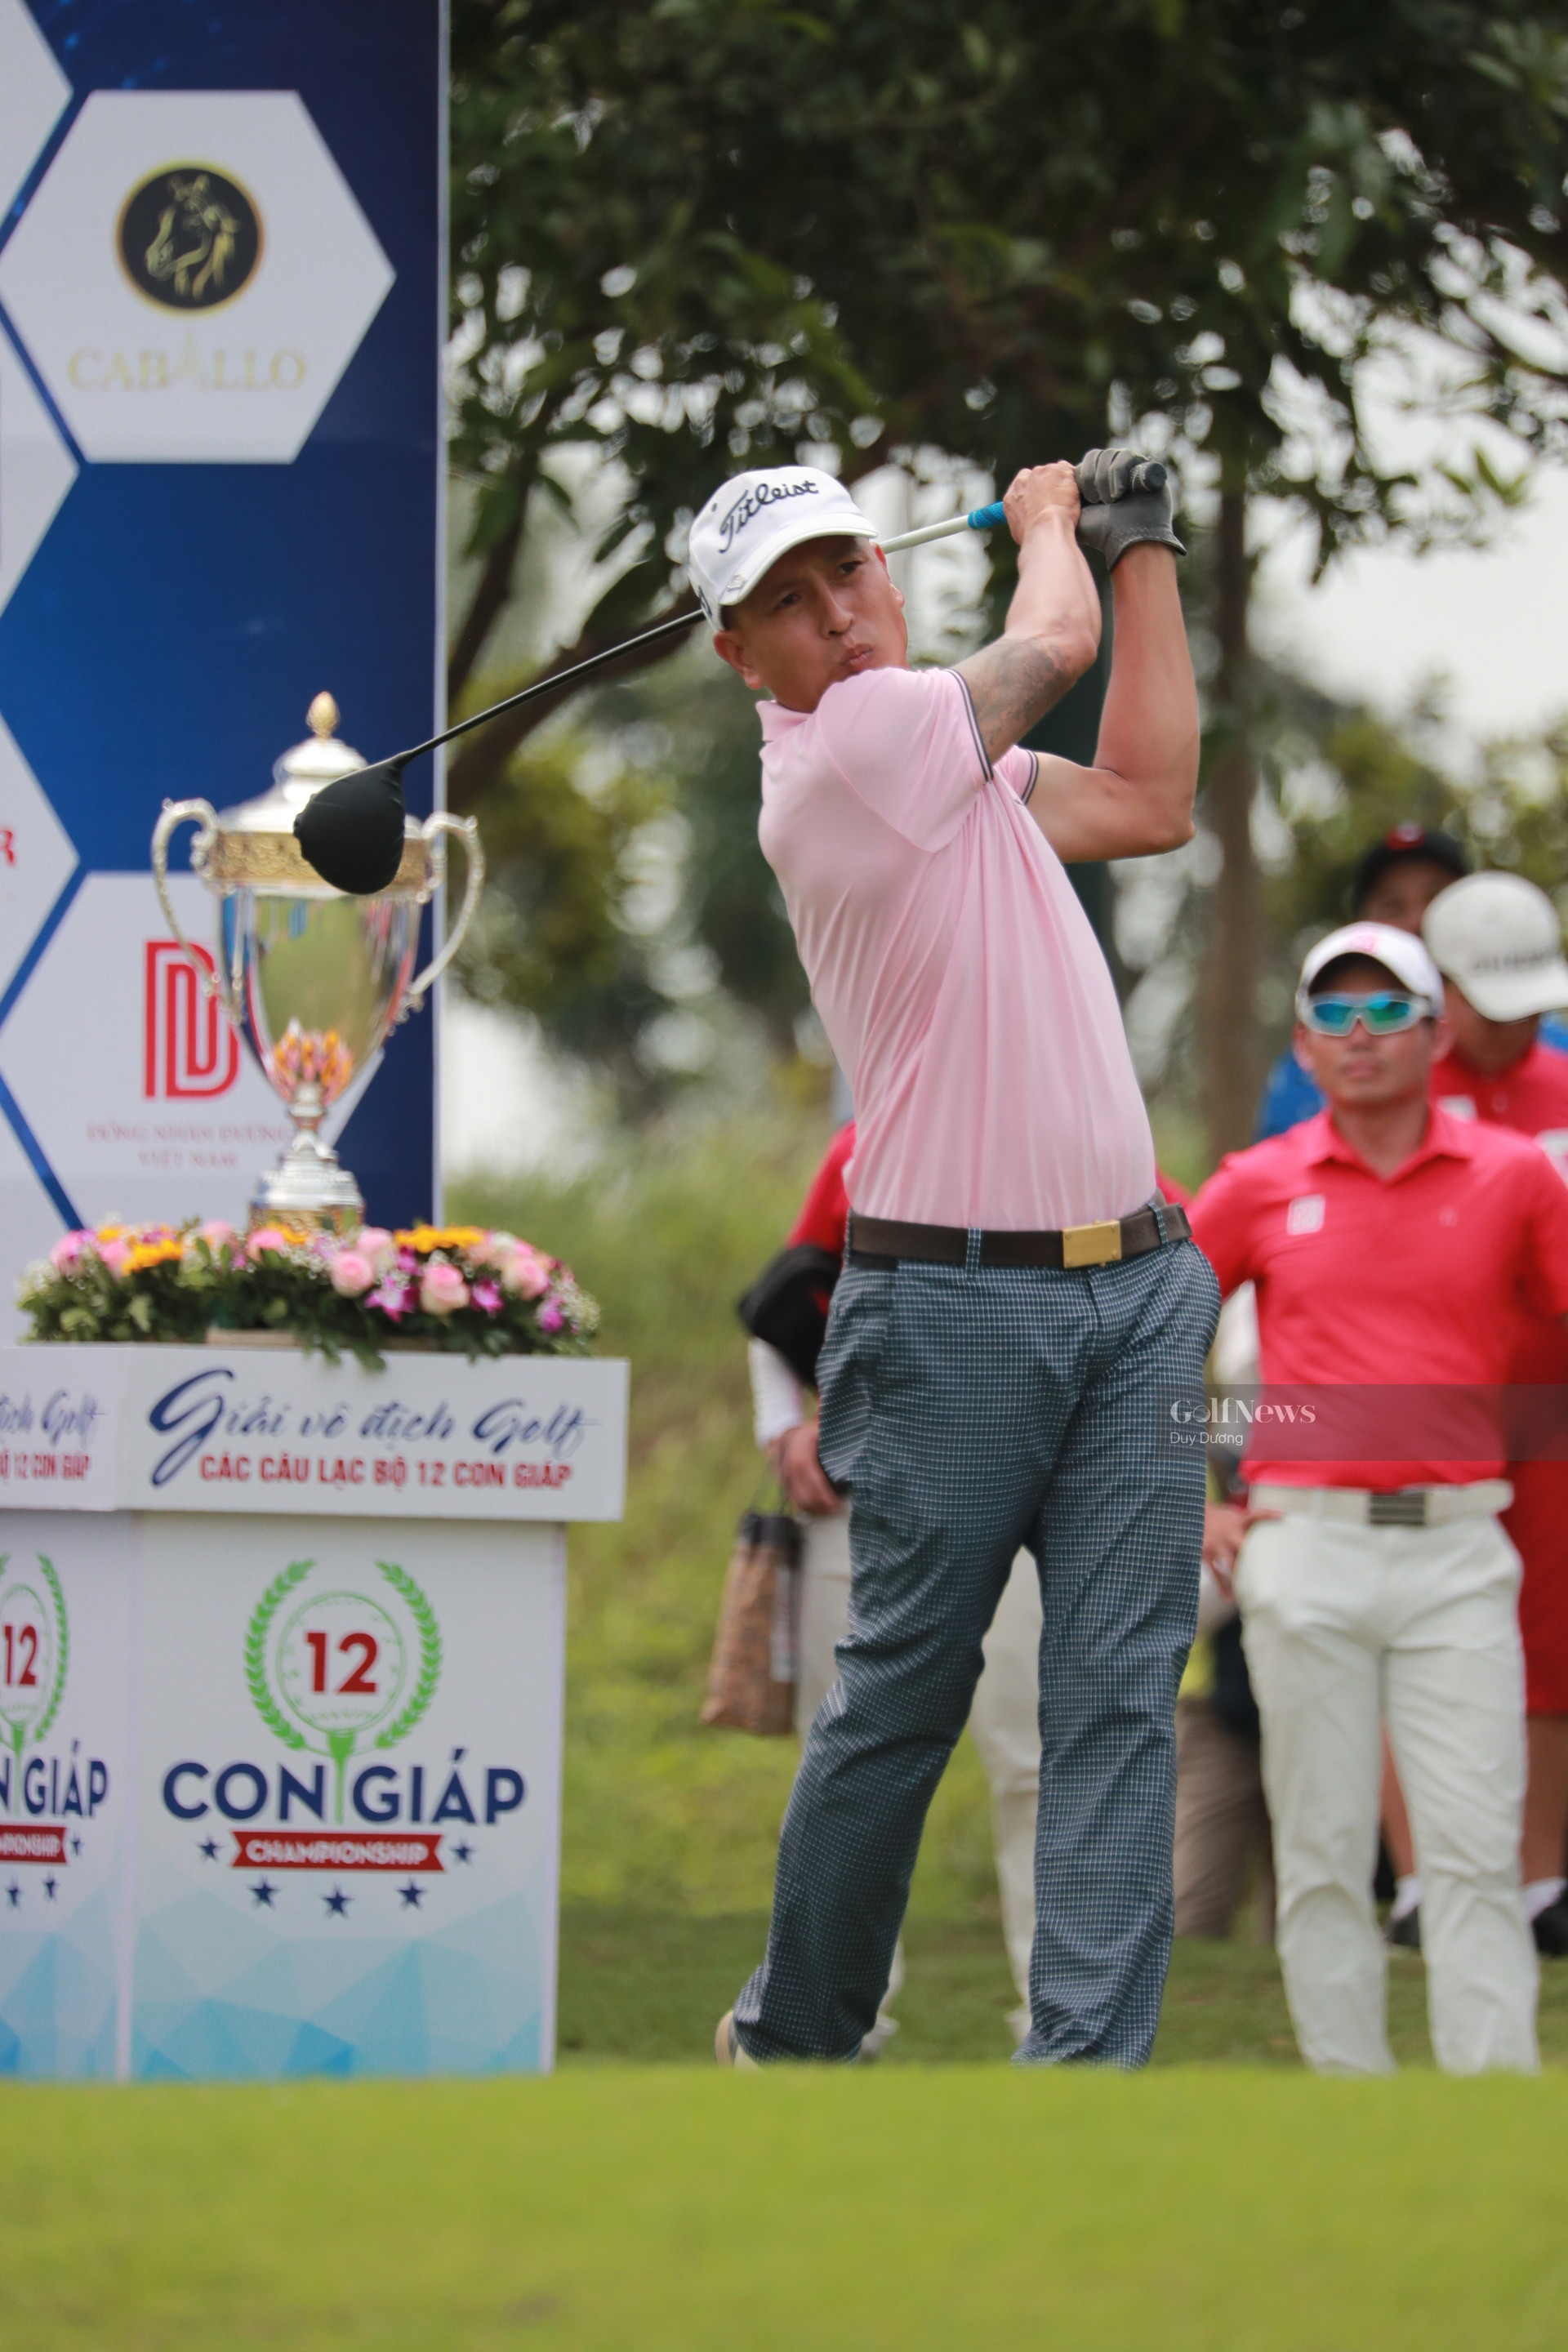 Golfer Trương Văn Mạnh: “Ghi Eagle tại giải Vô địch các CLB 12 con Giáp là một điều vô cùng đặc biệt.” - Ảnh 1.